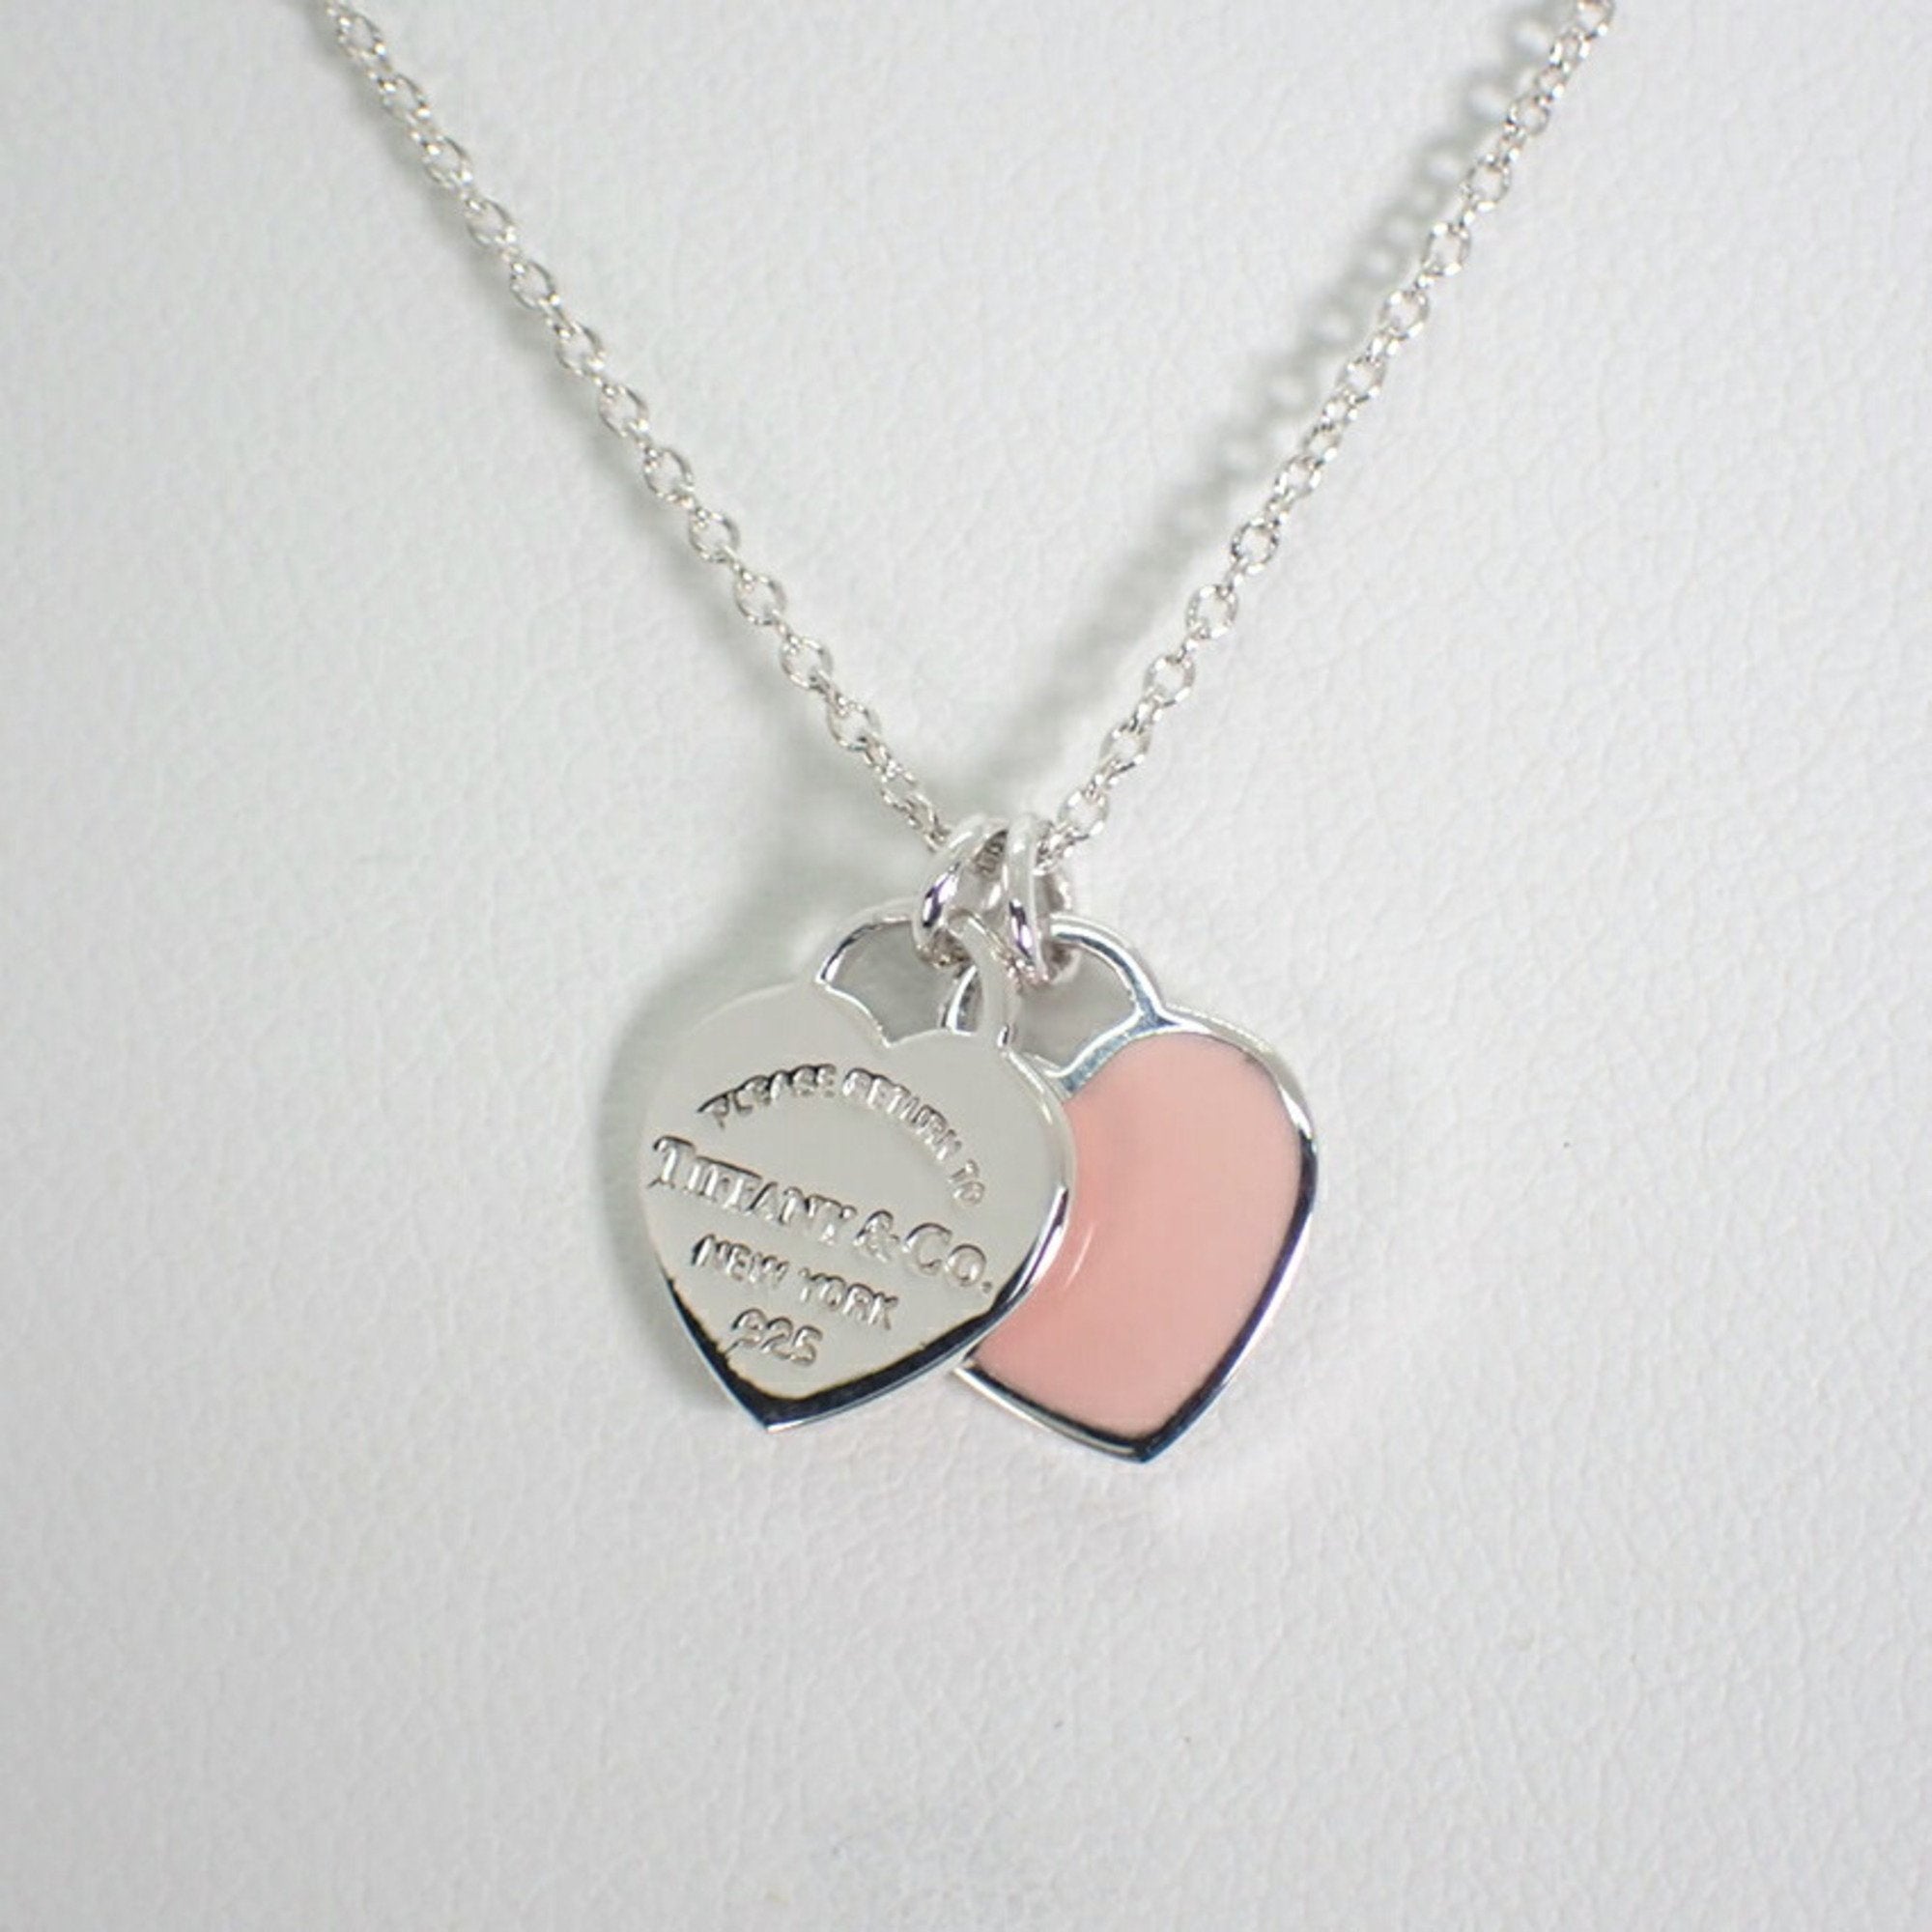 Tiffany Co Open Heart Necklace 7mm Vs 11mm | TikTok